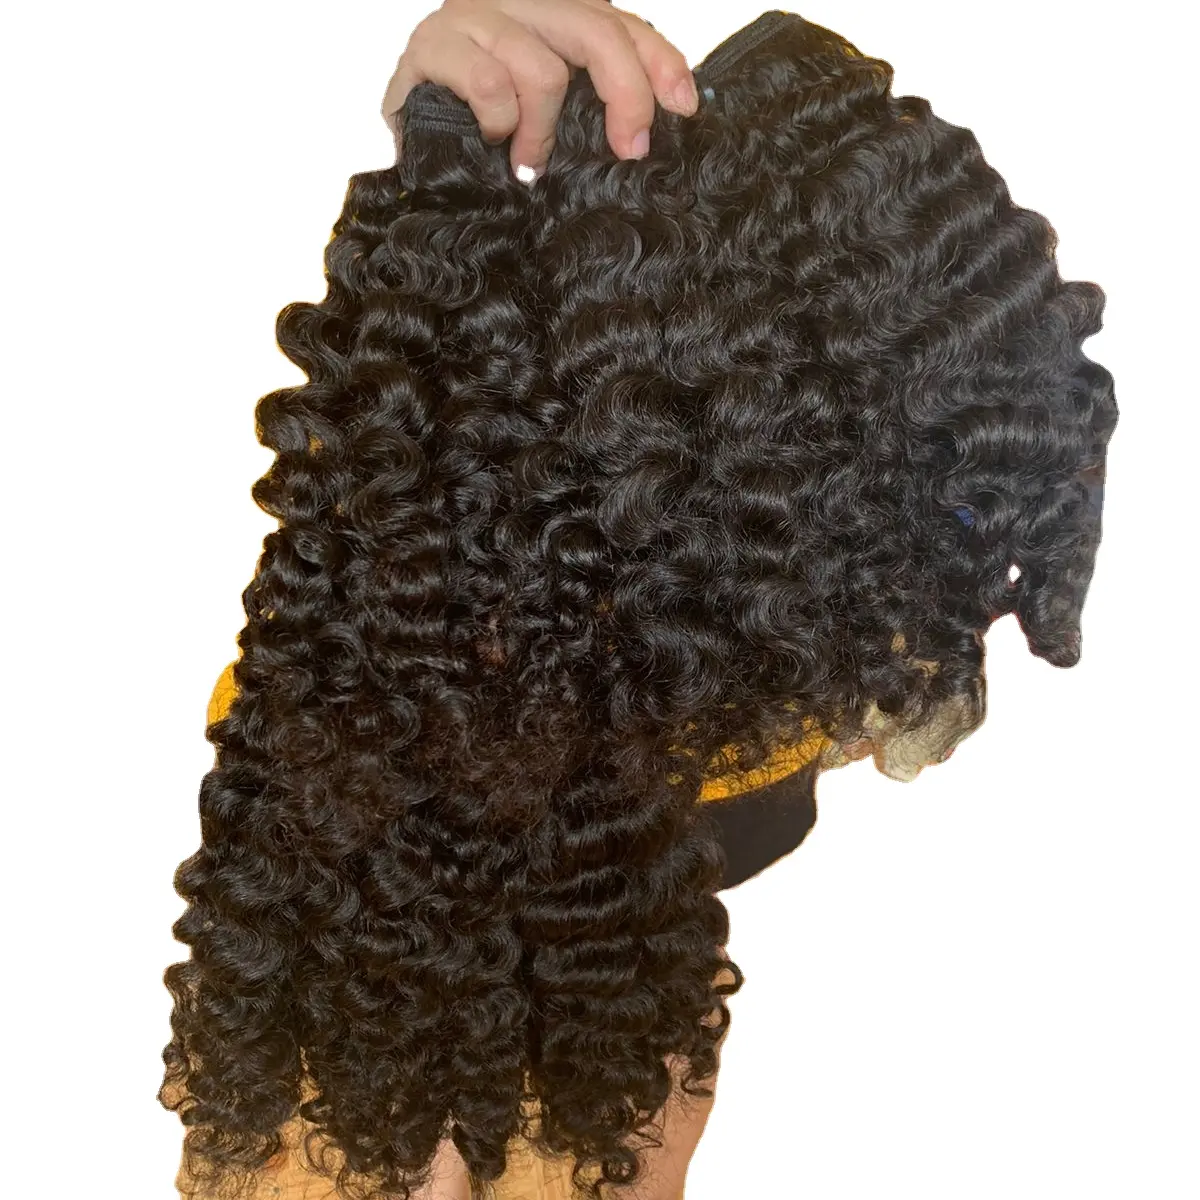 Fascio di capelli ricci birmani colore naturale 100% capelli vergini vietnamiti/malesi grezzi, capelli umani ricci birmani per donne nere